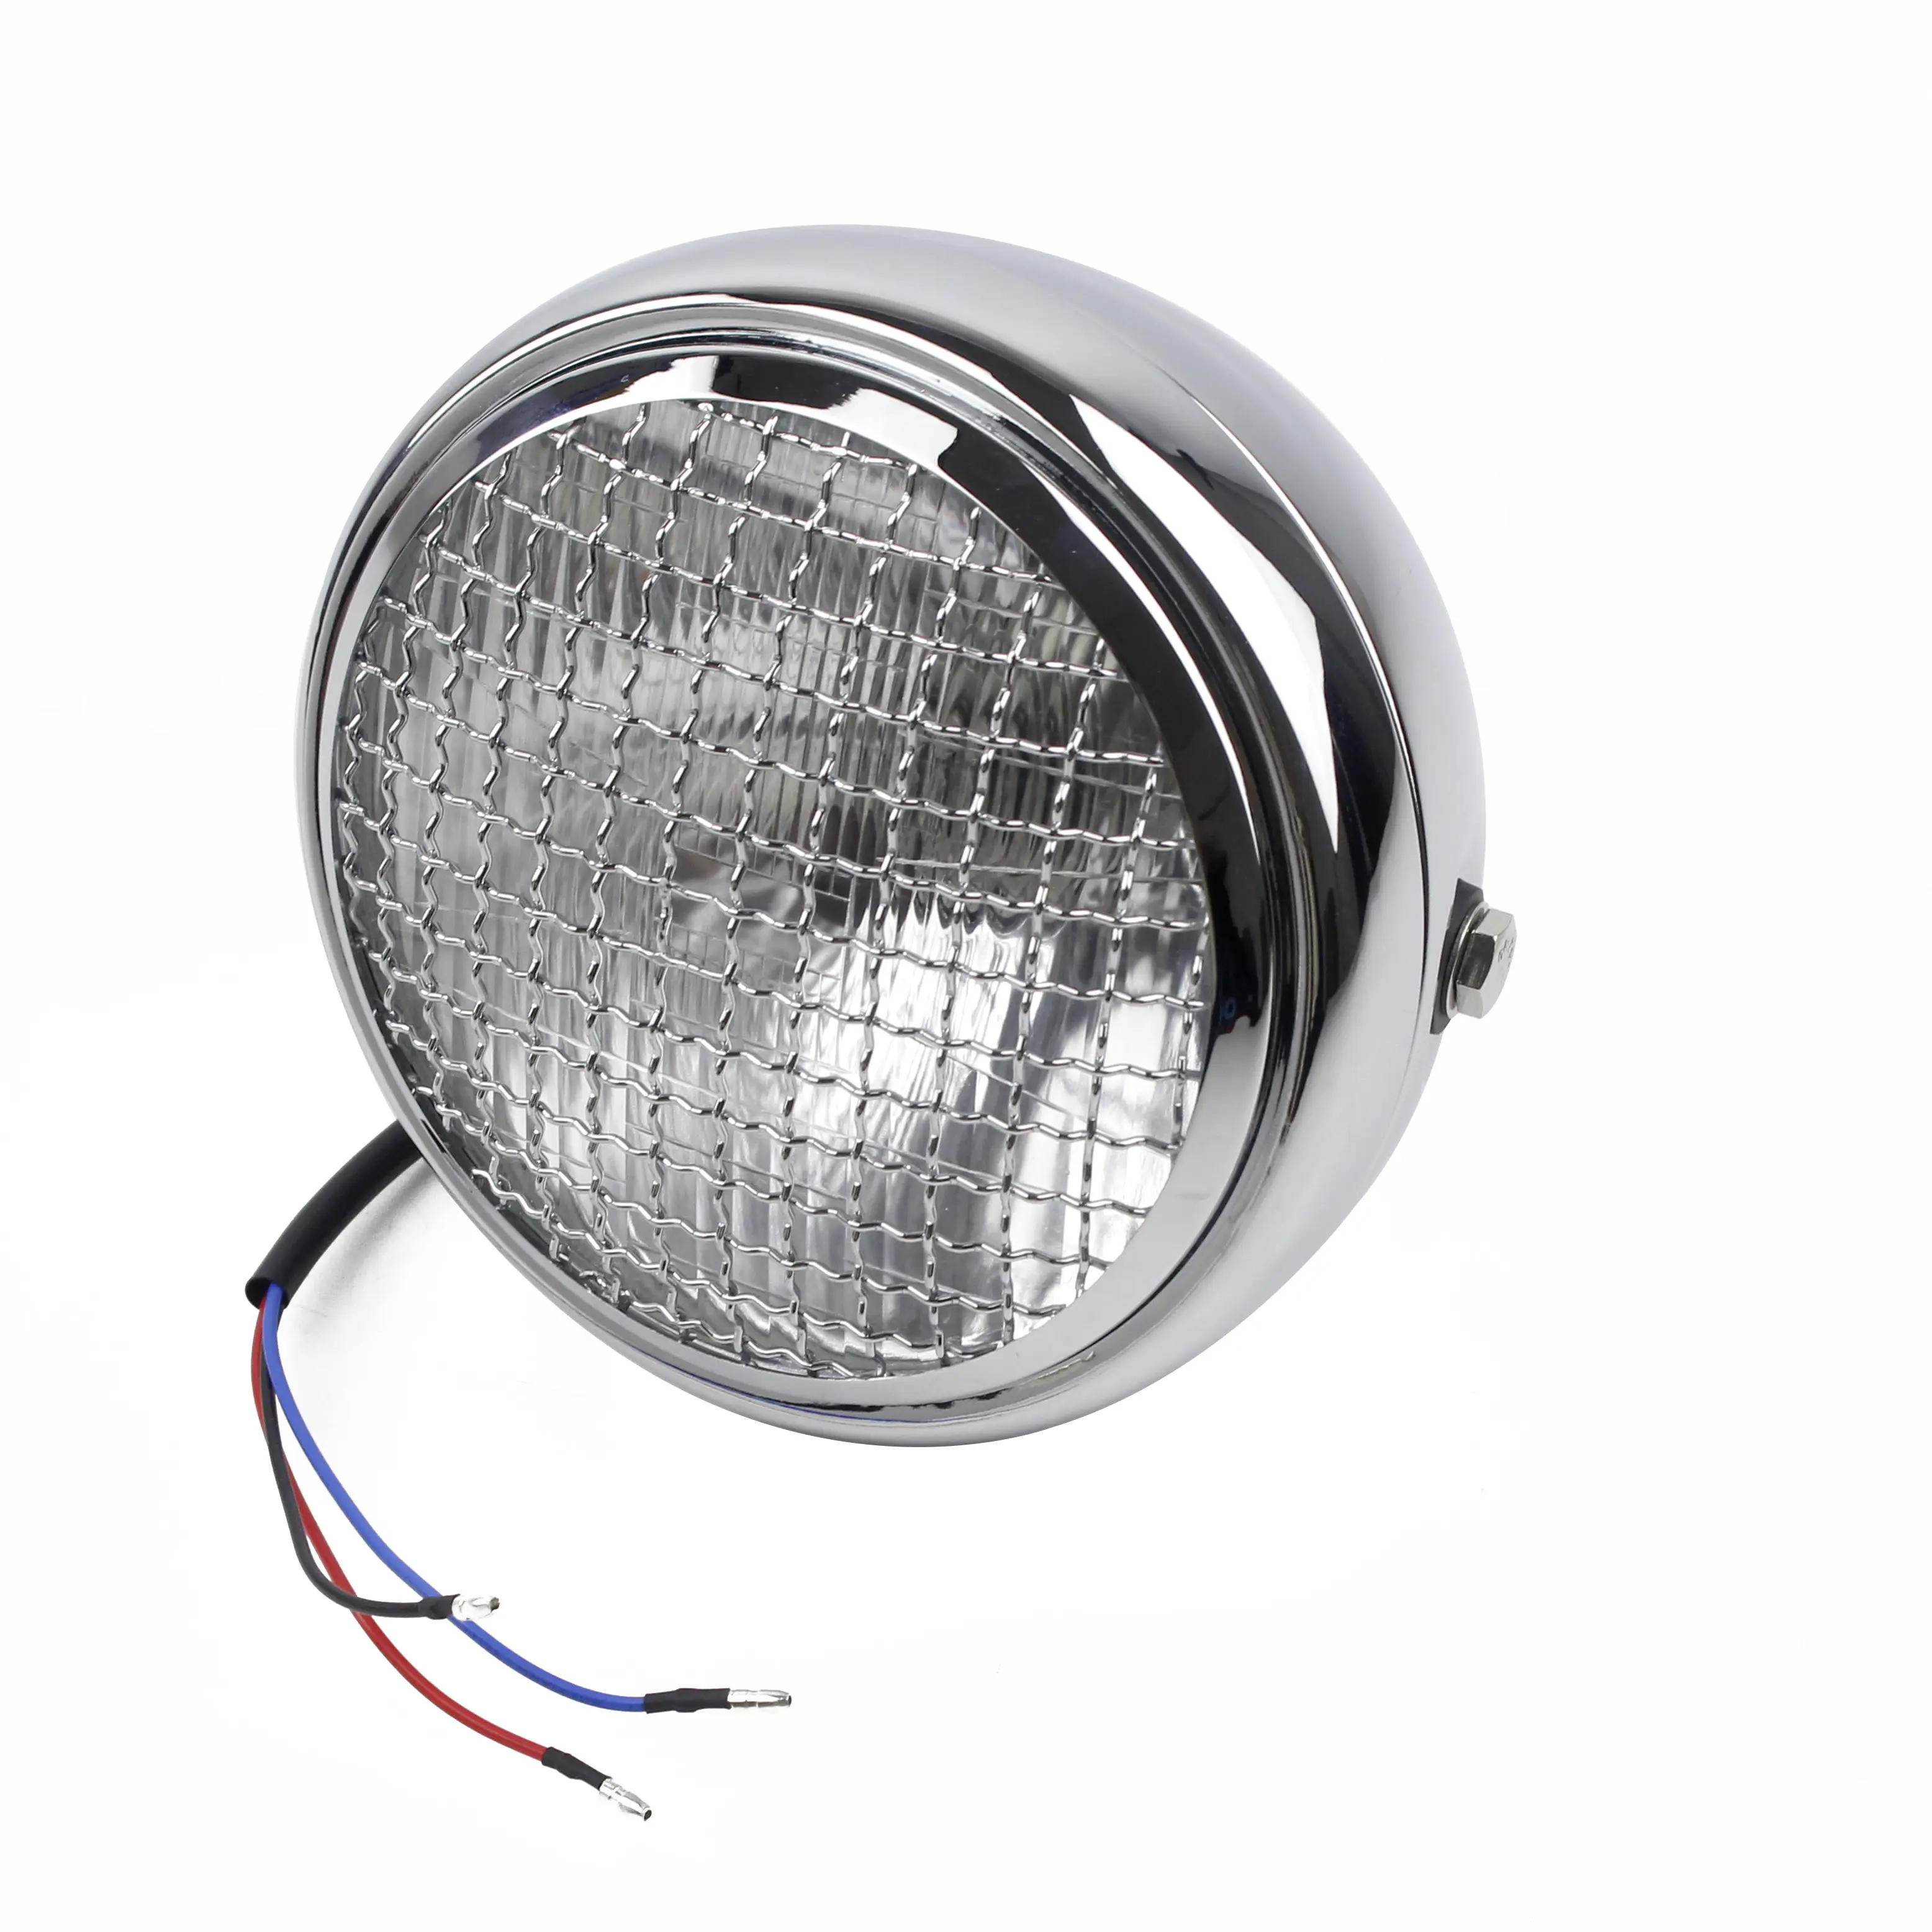 Chrome Headlamp Motorcycle Headlight Round LED Head Light For Harley Cafe Racer Bobber Custom